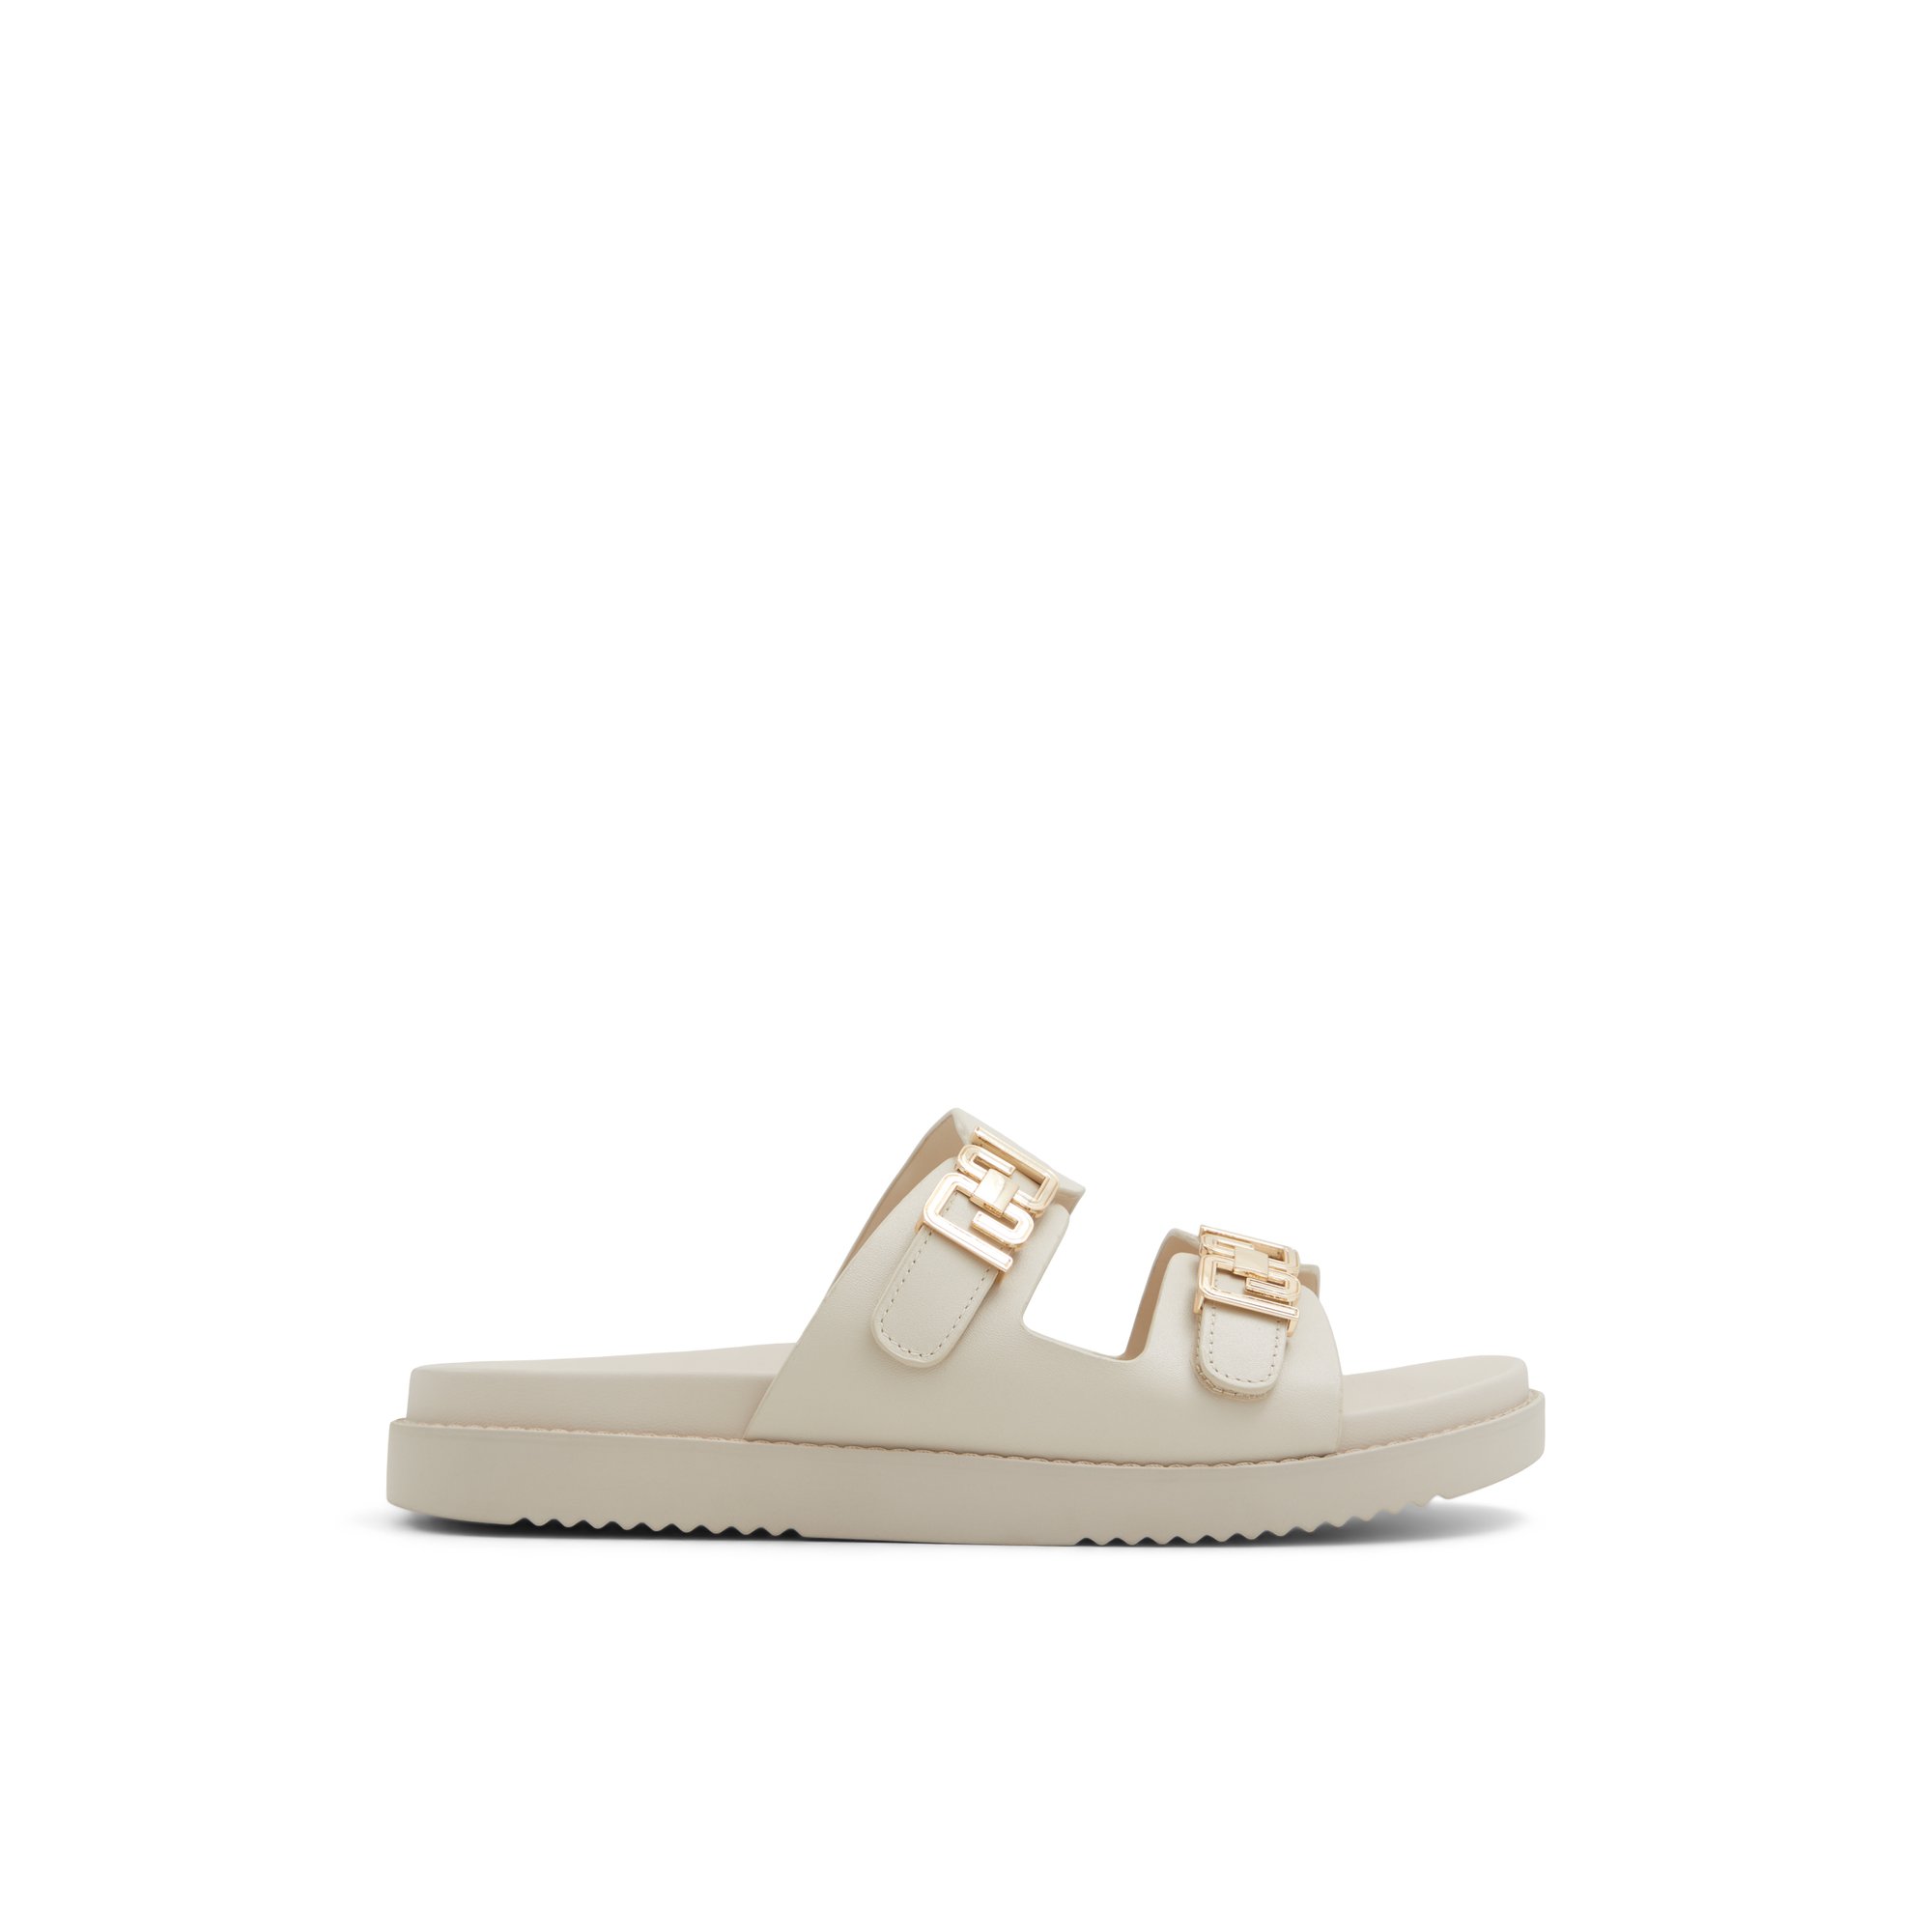 ALDO Alessie - Women's Flat Sandals - White